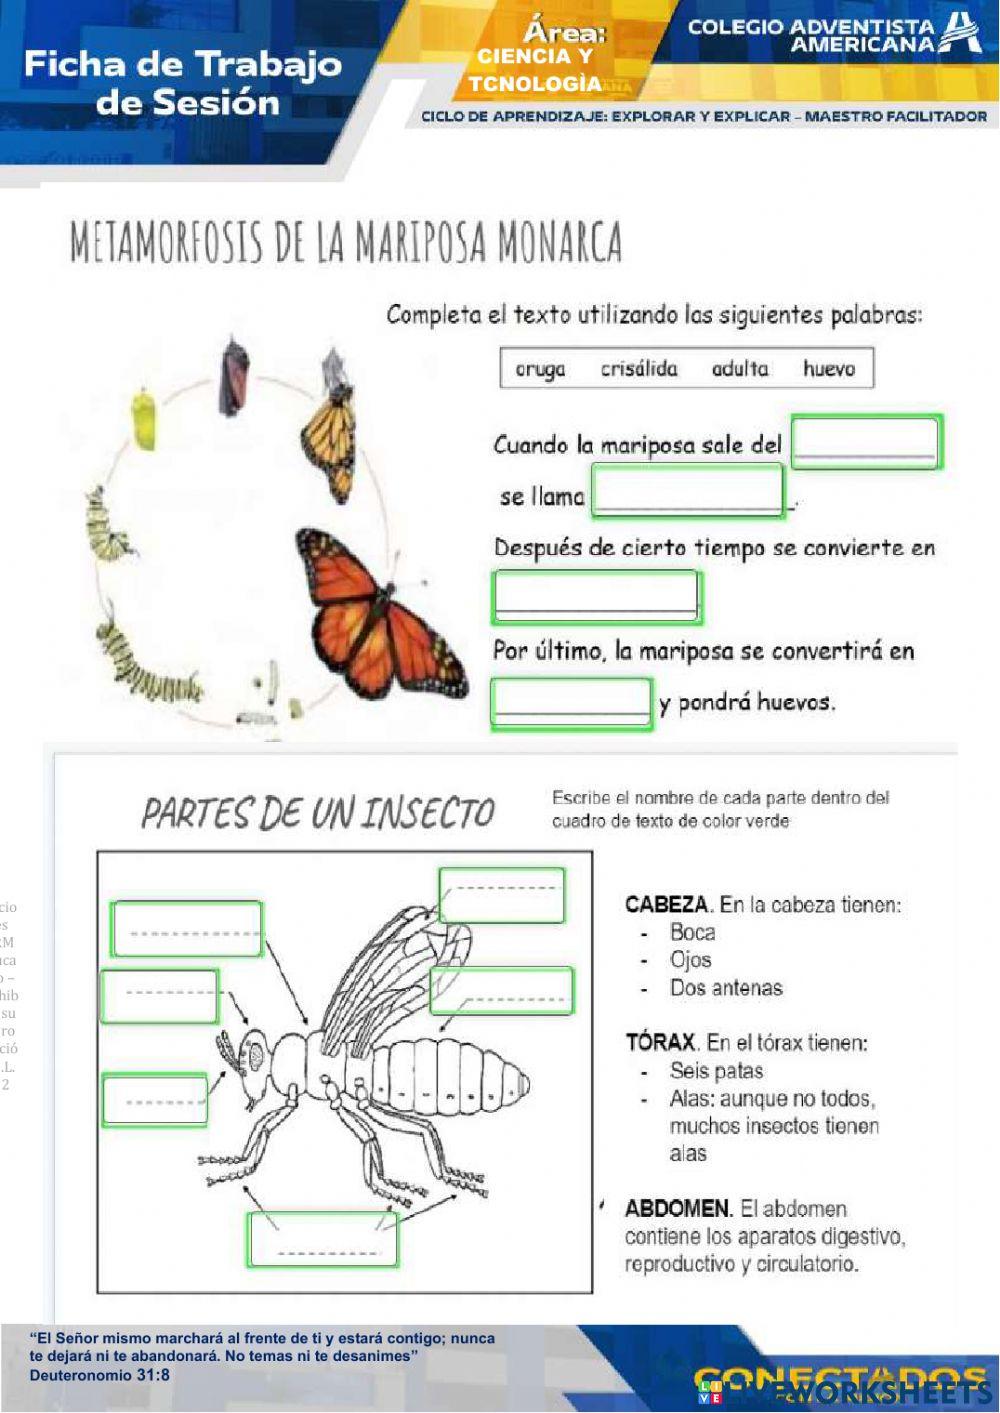 Caracteristicas de los invertebrados